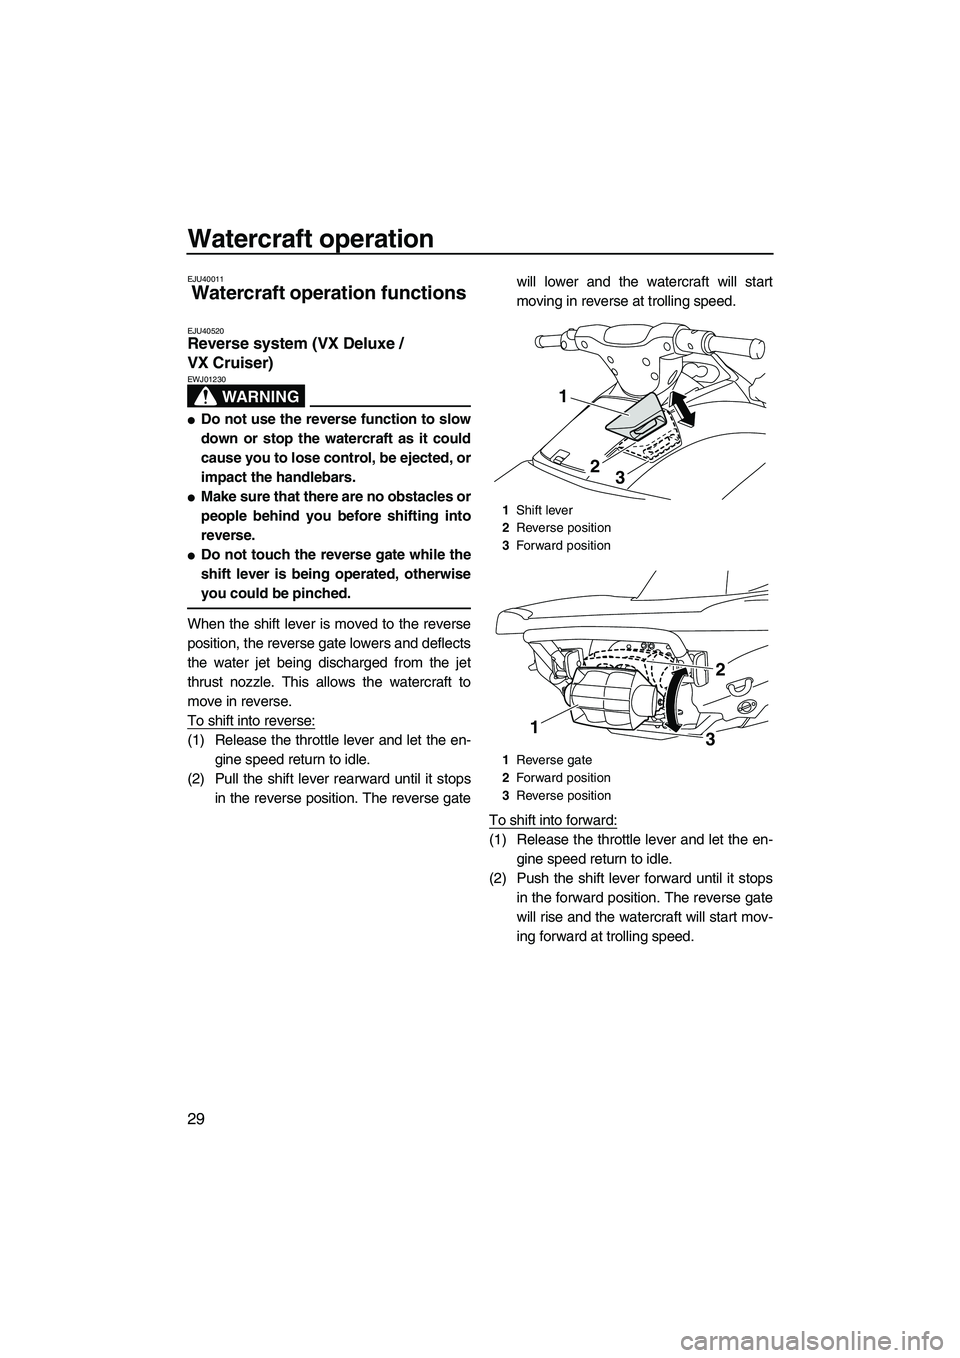 YAMAHA VX SPORT 2010 Owners Guide Watercraft operation
29
EJU40011
Watercraft operation functions 
EJU40520Reverse system (VX Deluxe / 
VX Cruiser) 
WARNING
EWJ01230
Do not use the reverse function to slow
down or stop the watercraft